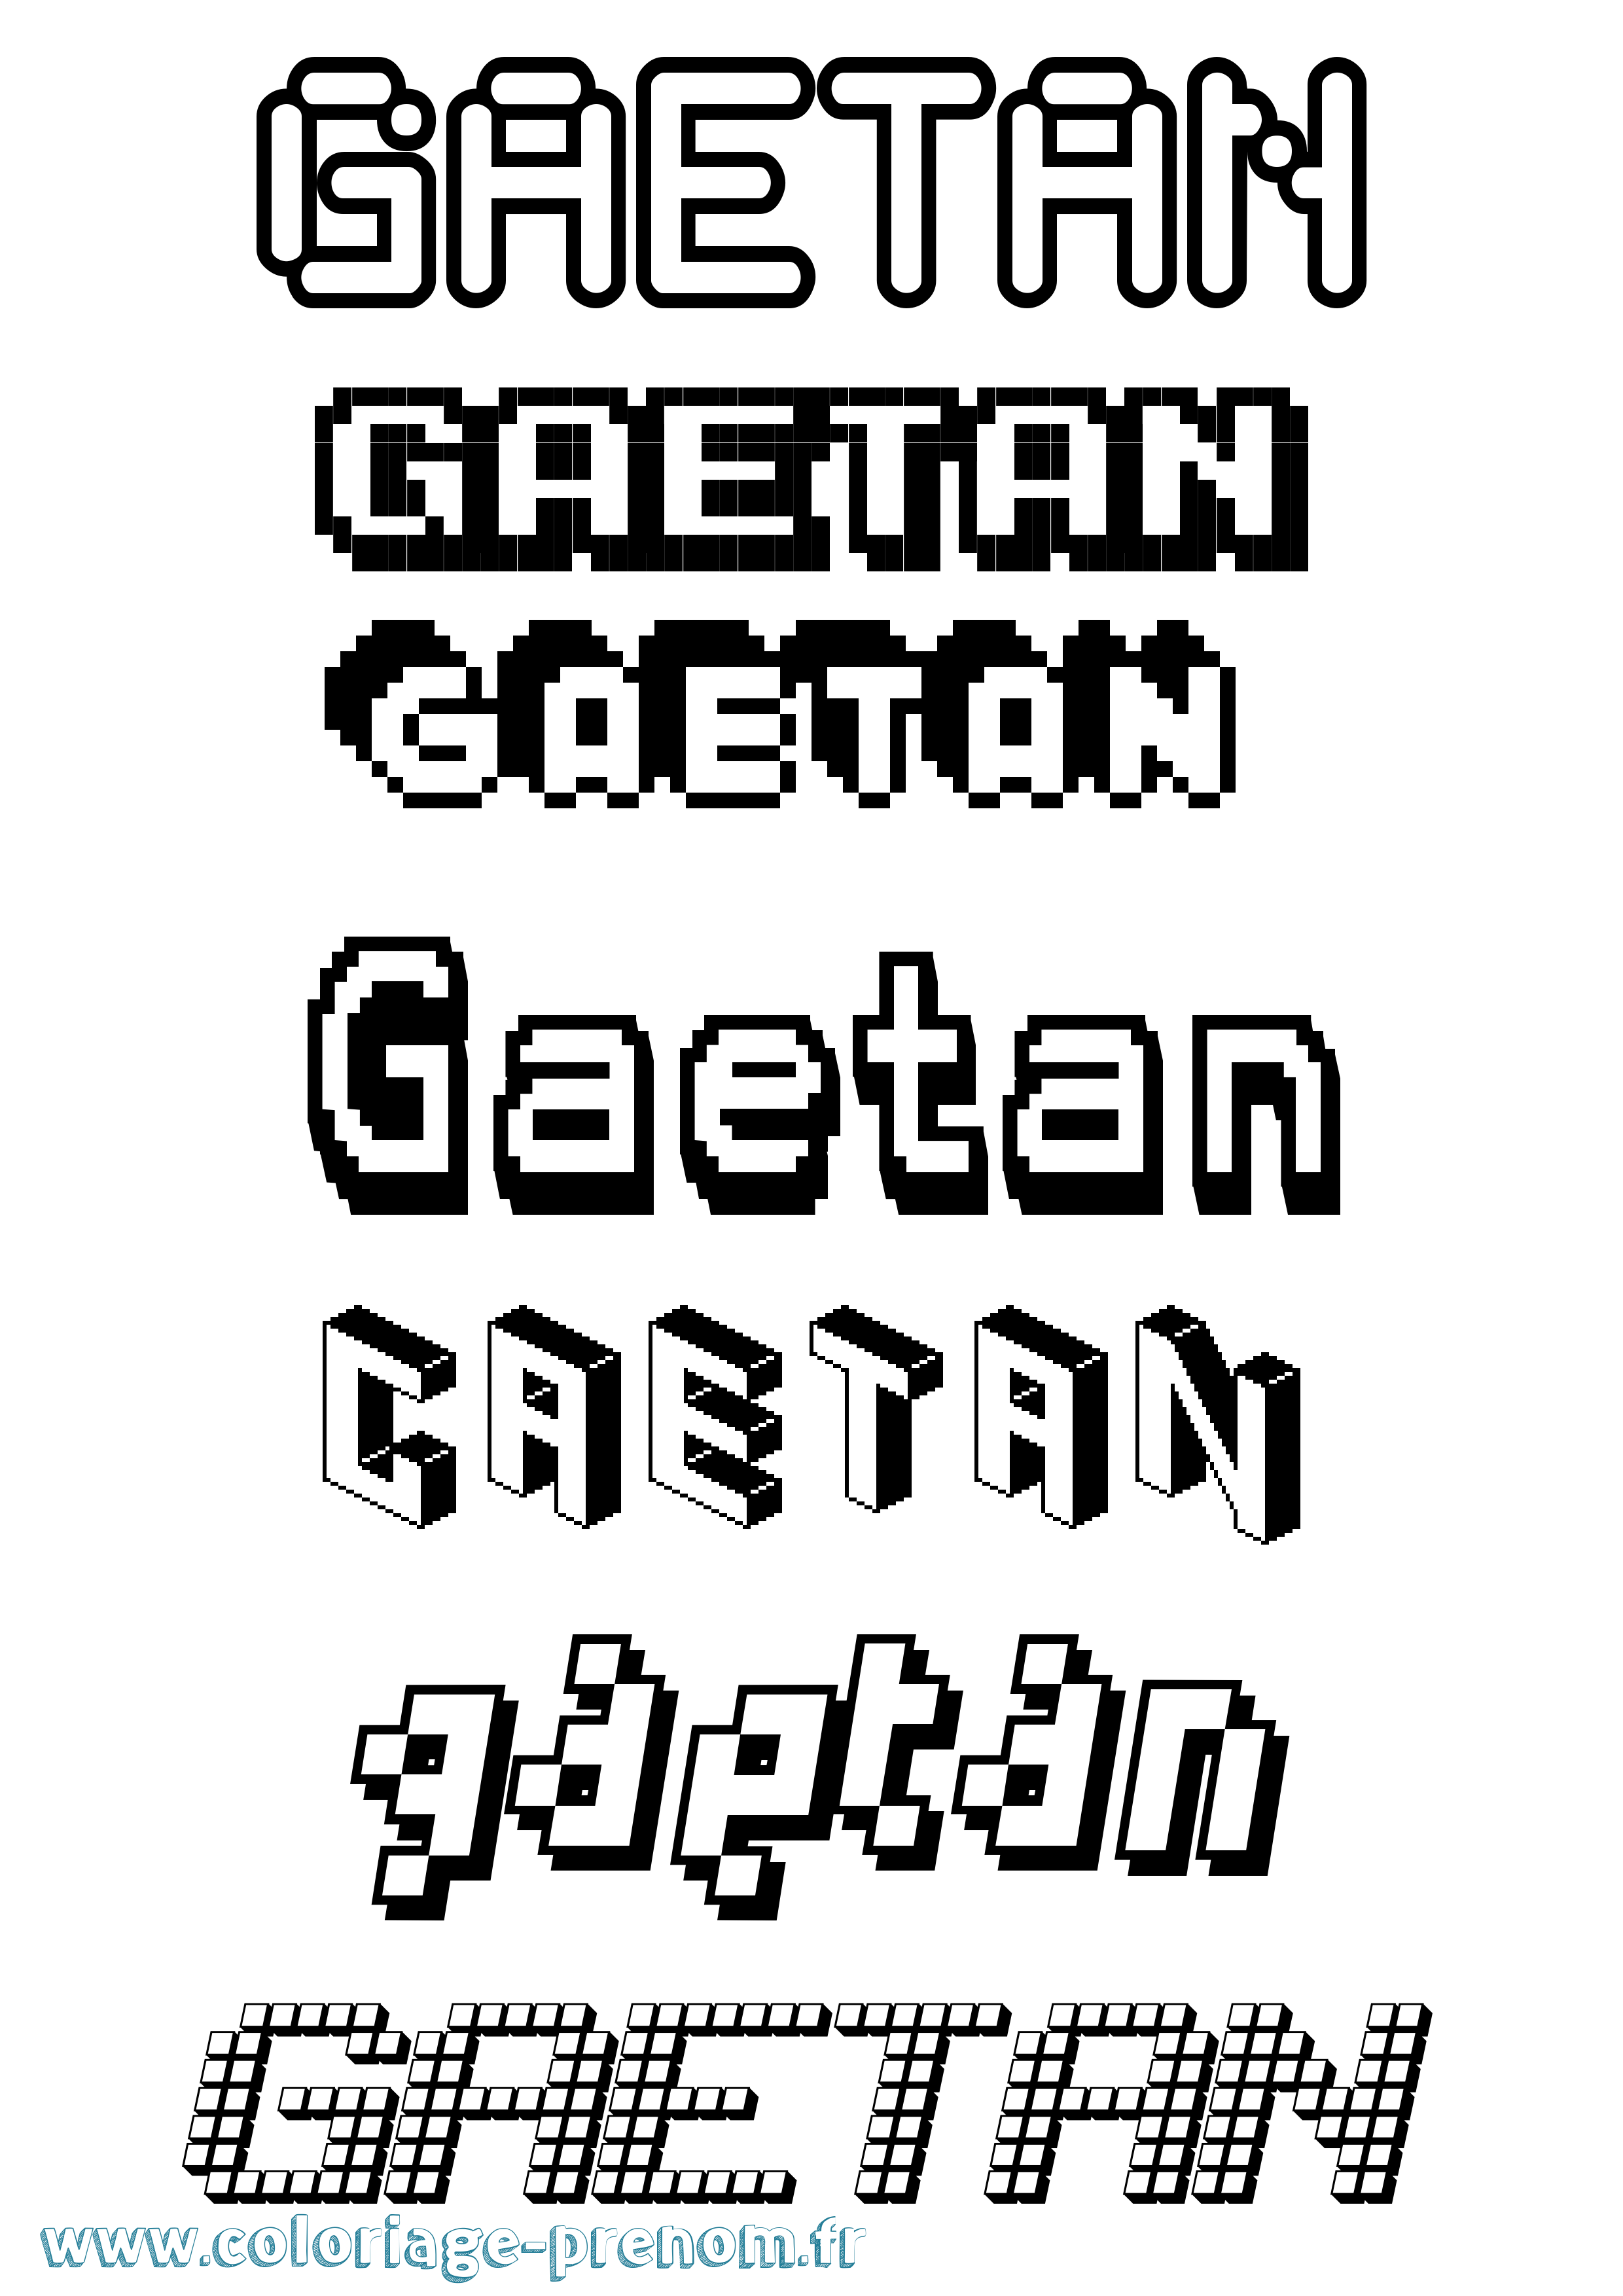 Coloriage prénom Gaetan